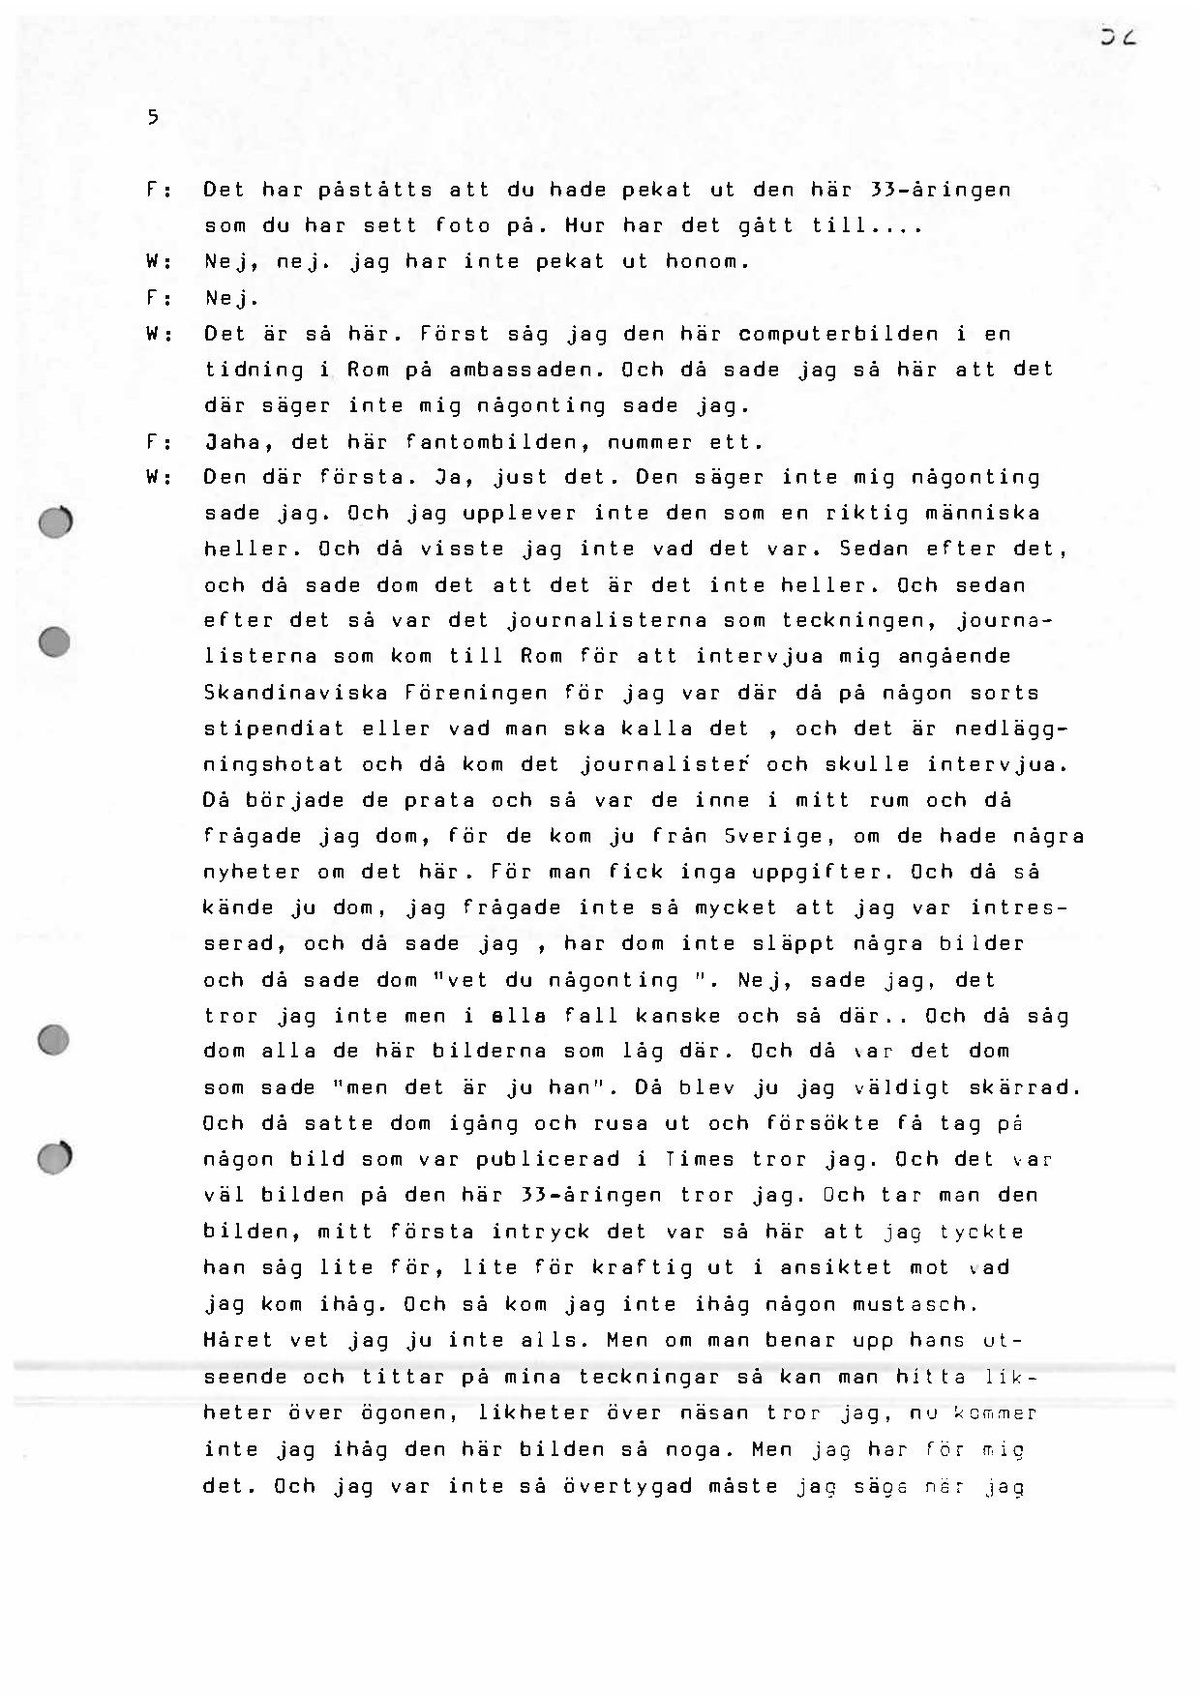 Pol-1986-04-24 2040-2054 L860-00-D Birgitta Wennerling dialogförhör om misstänkt man utanför Grand.pdf